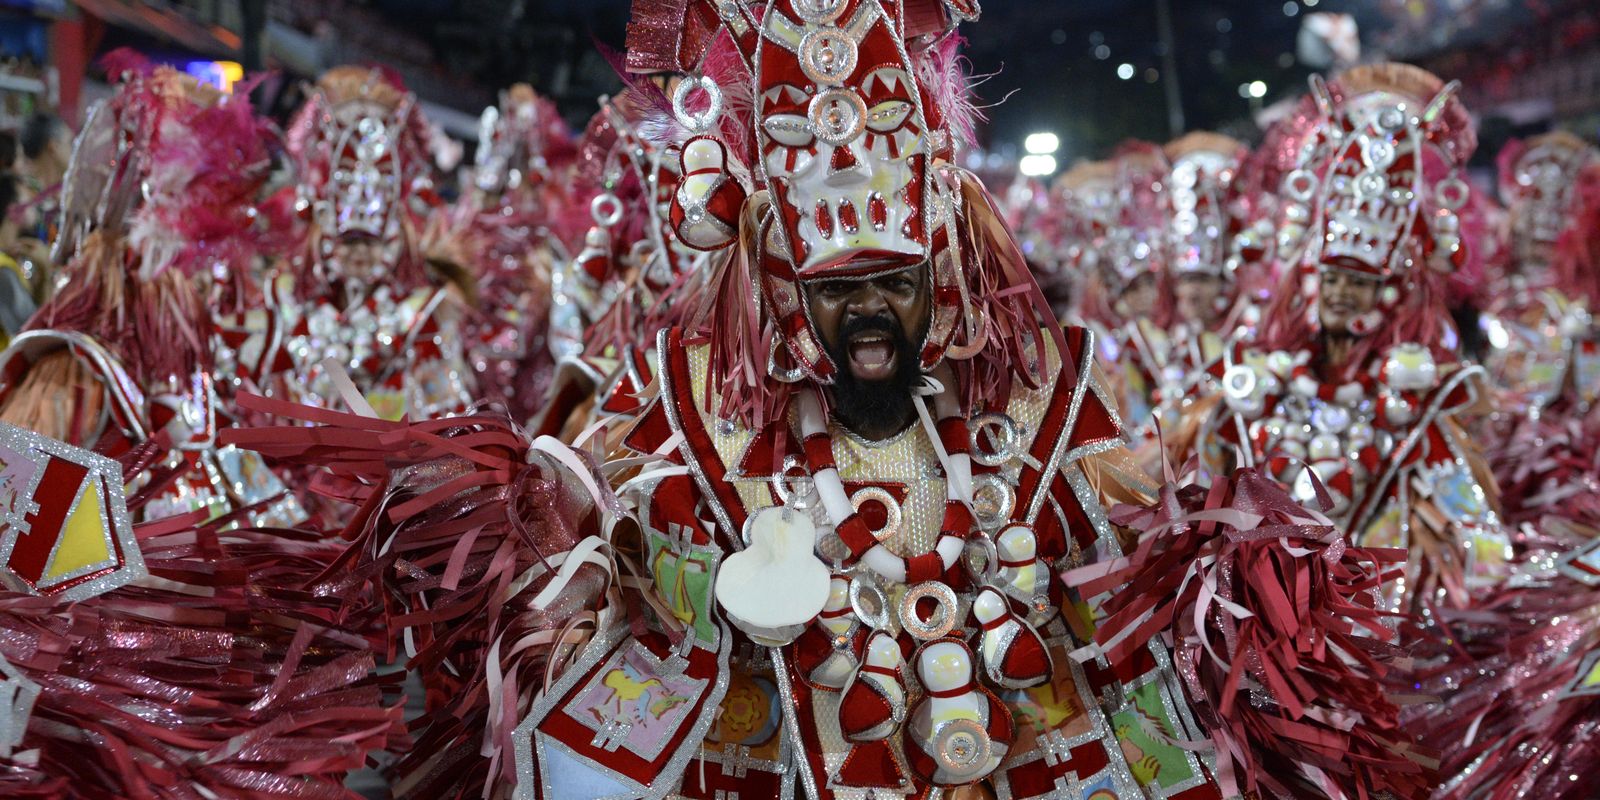 Mudanças nos desfiles das escolas de samba do Rio divide opiniões